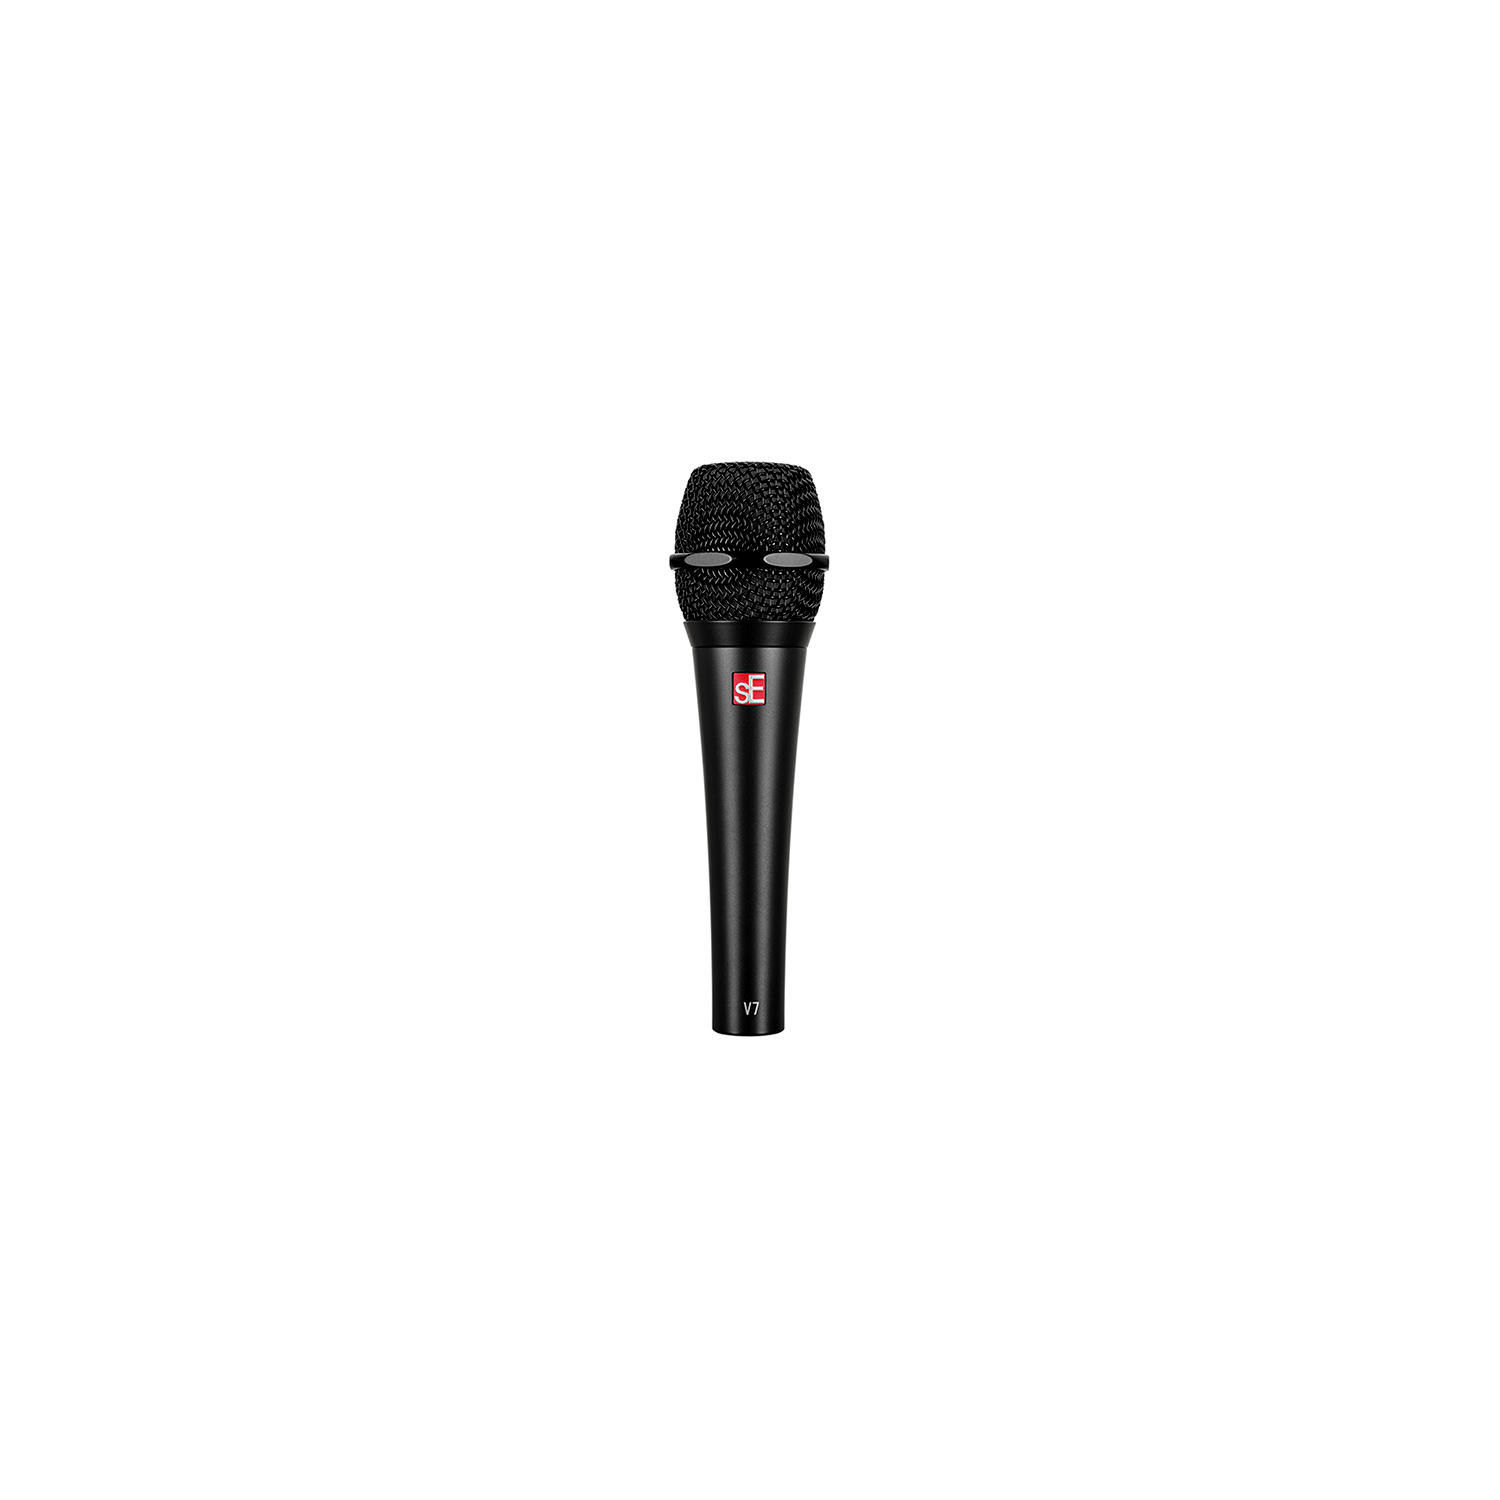 sE Electronics V7 Handheld Dynamic Vocal Microphone - Black | Best